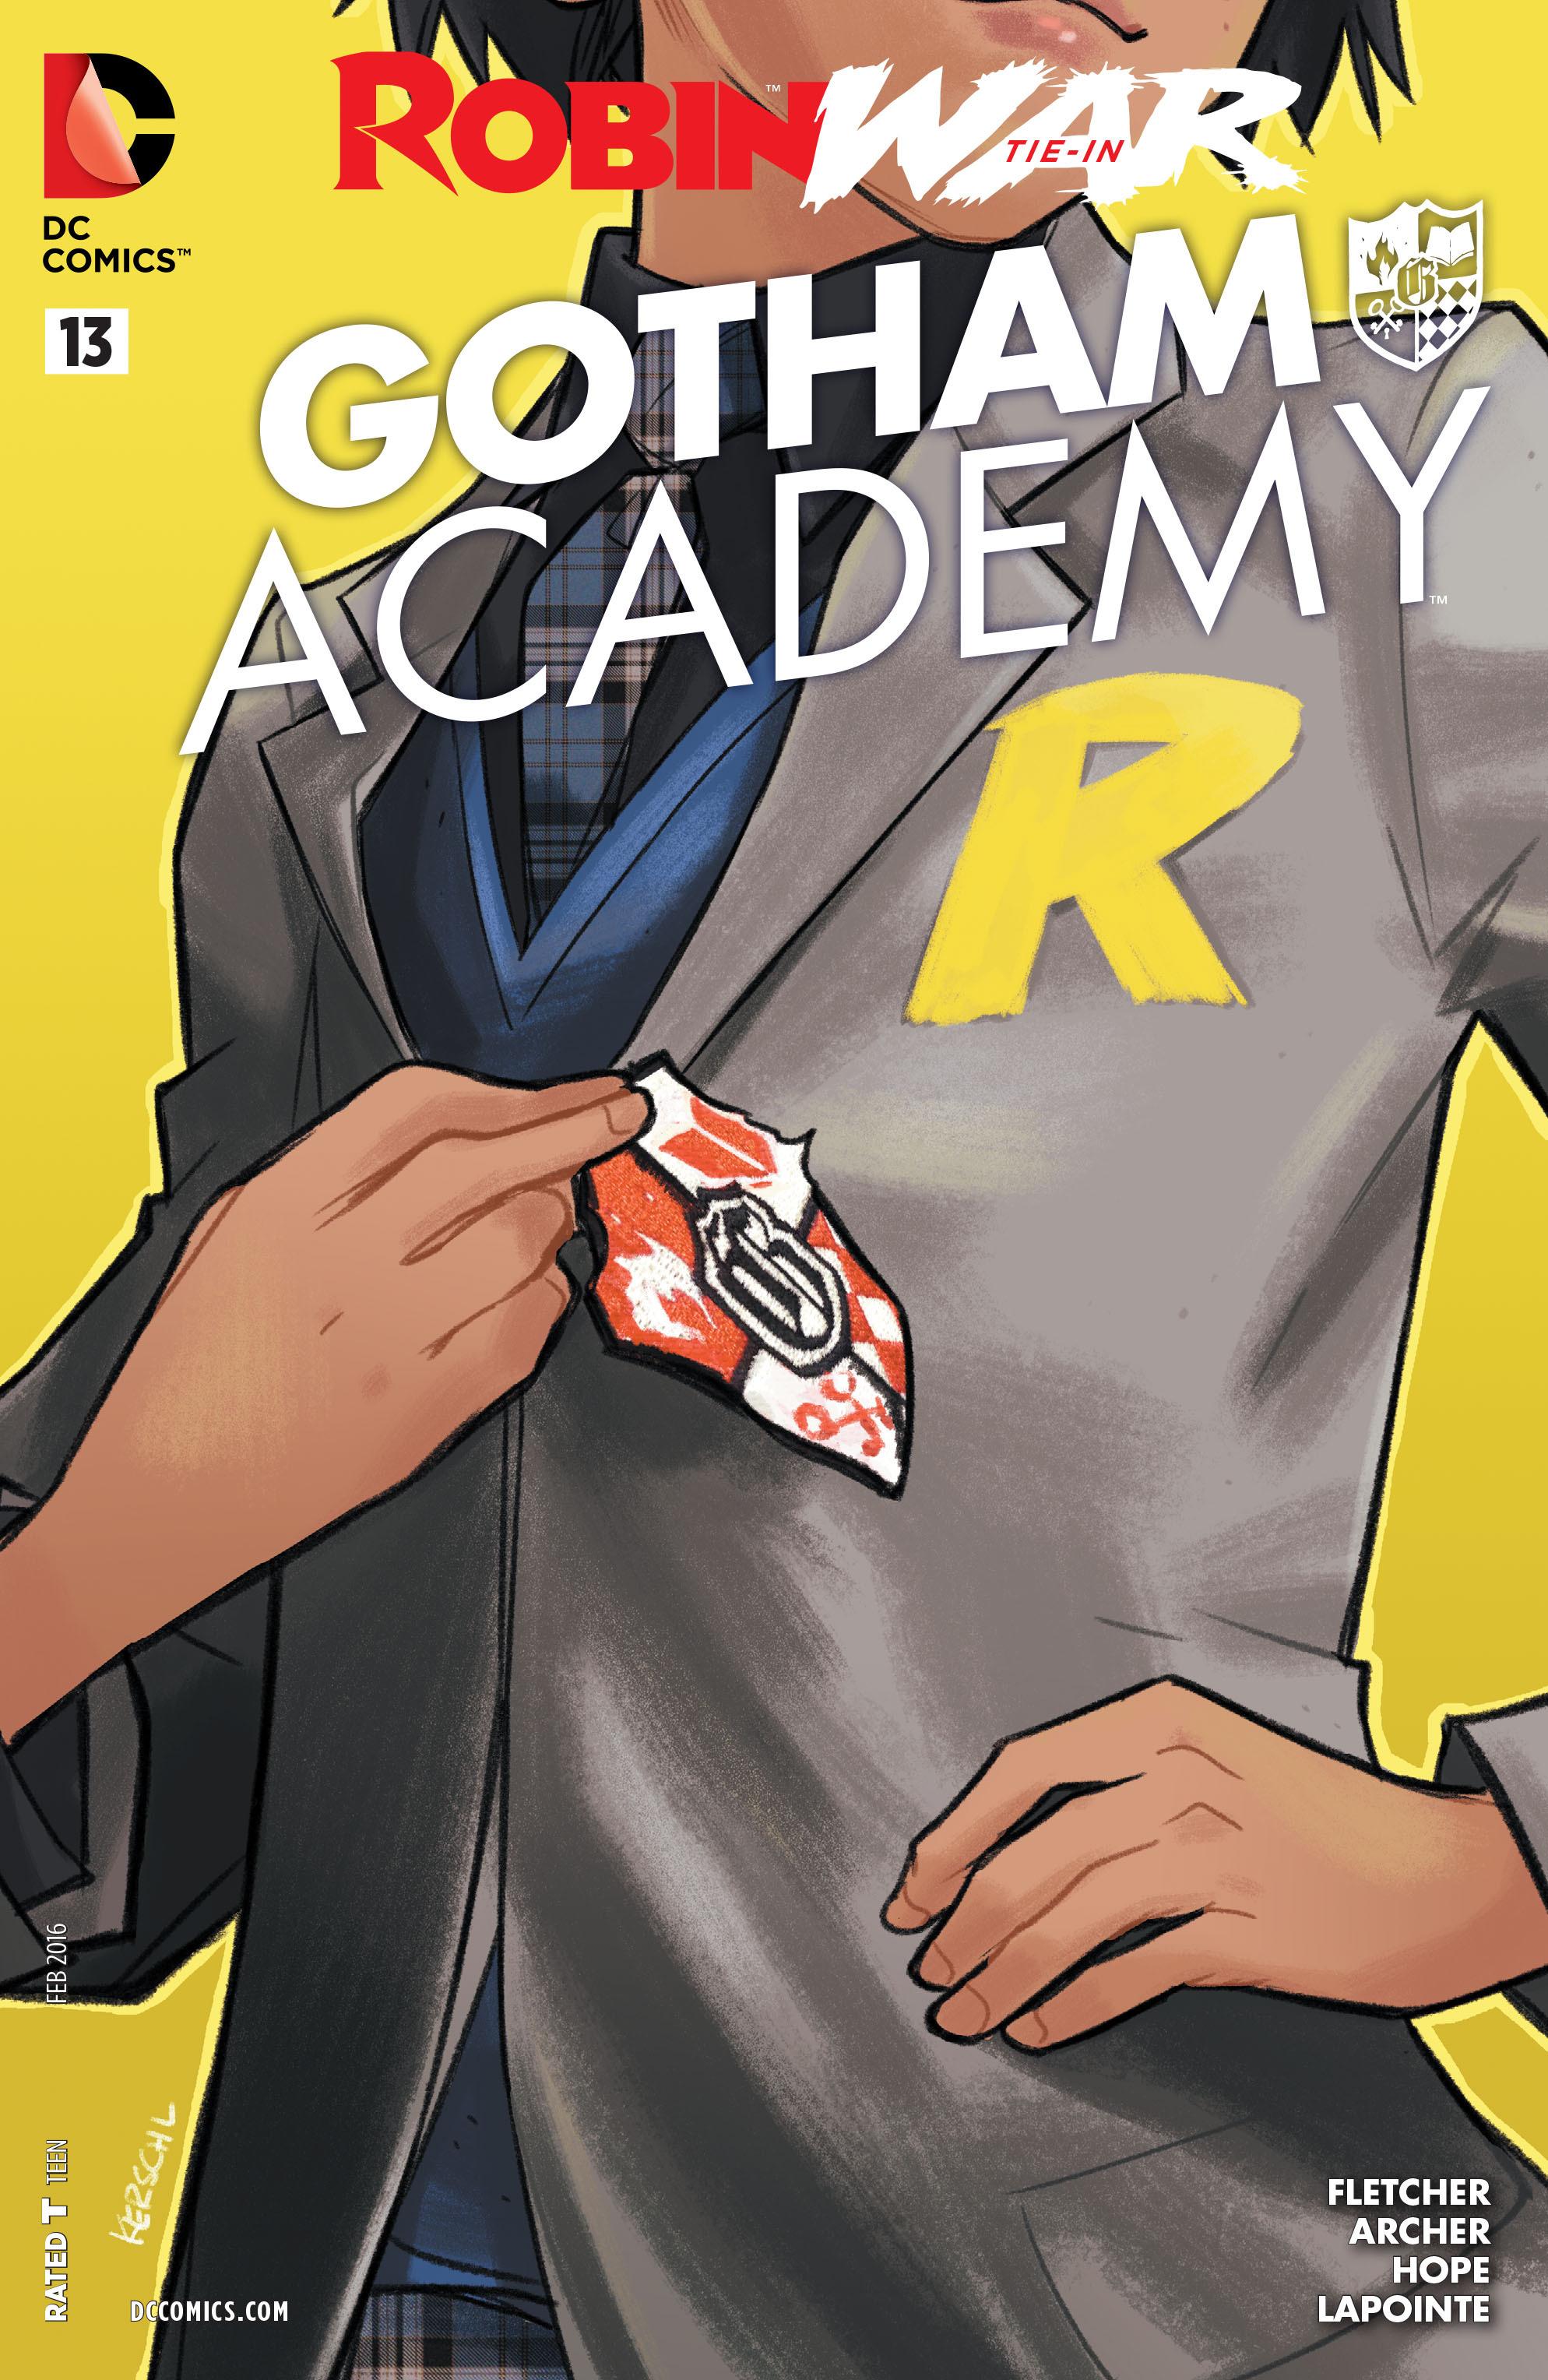 Gotham Academy Vol. 1 #13